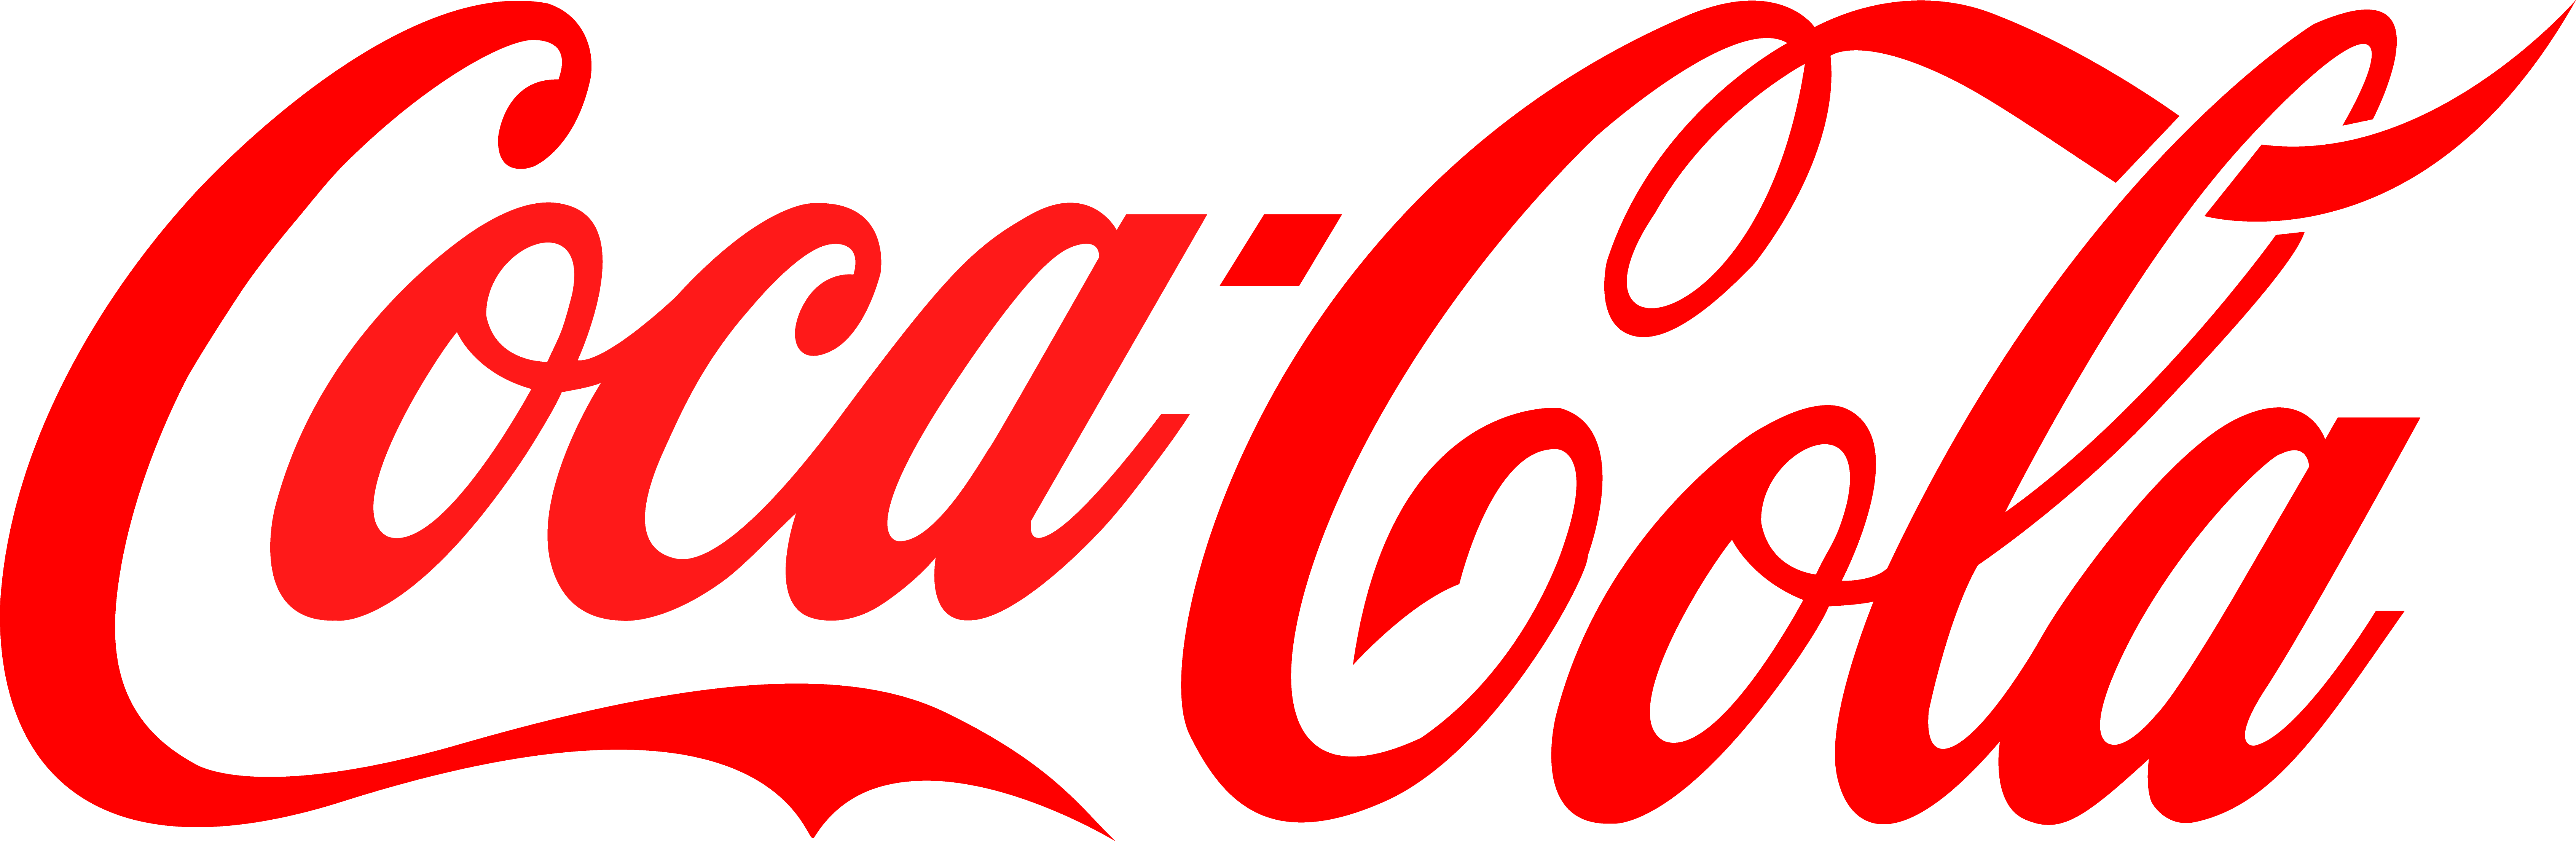 Coke Diet Coca-Cola Pepsi Fanta Logo The Clipart